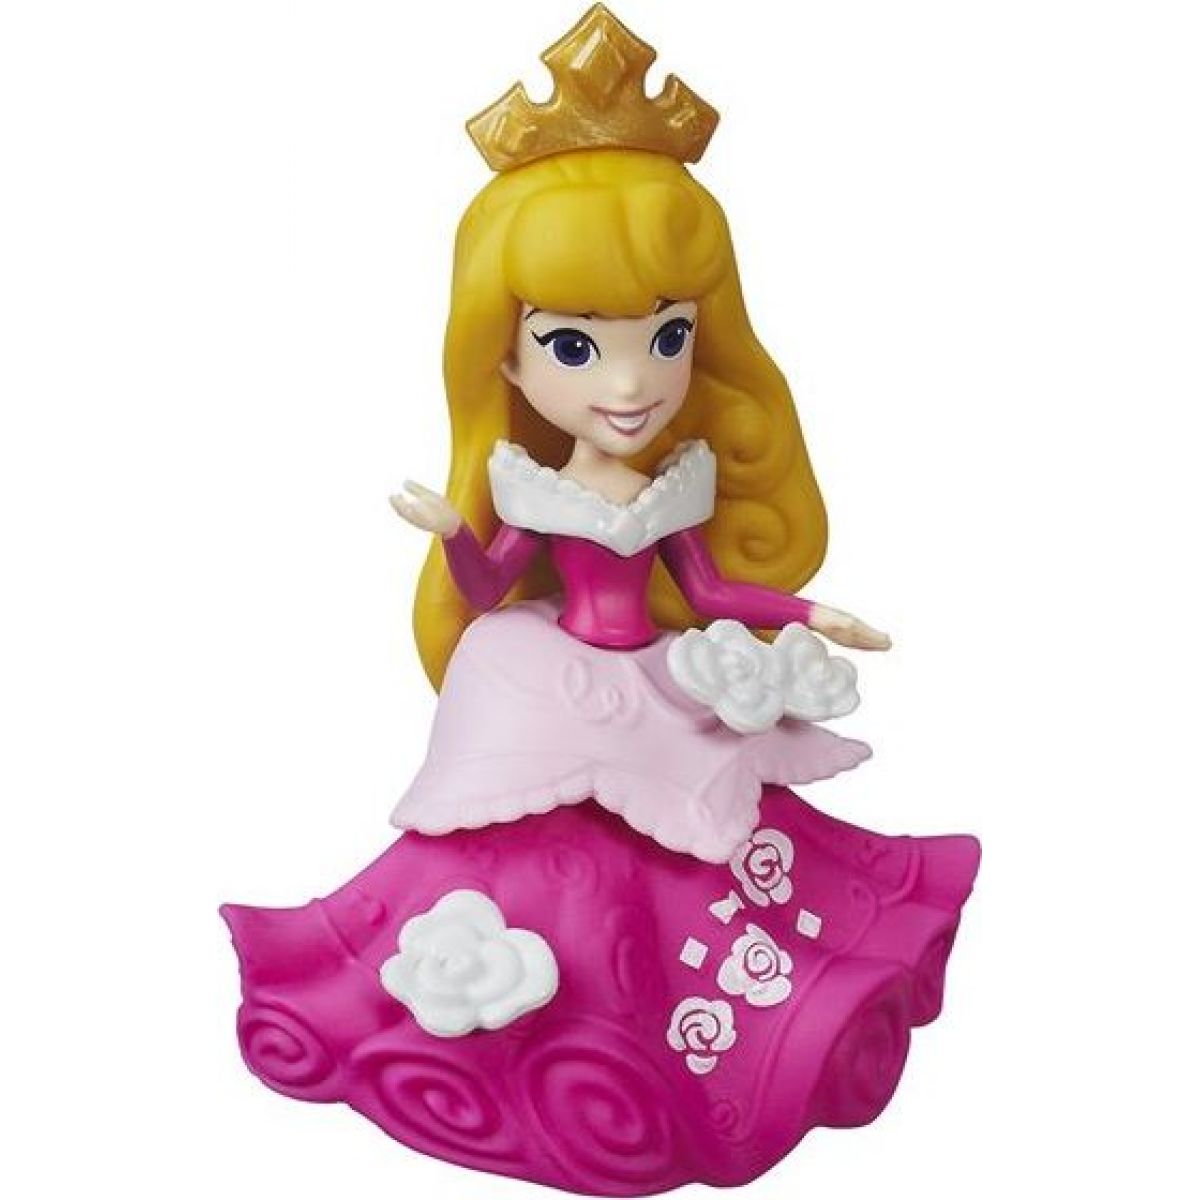 Hasbro Disney Princess Mini panenka - Šípková Růženka B5326